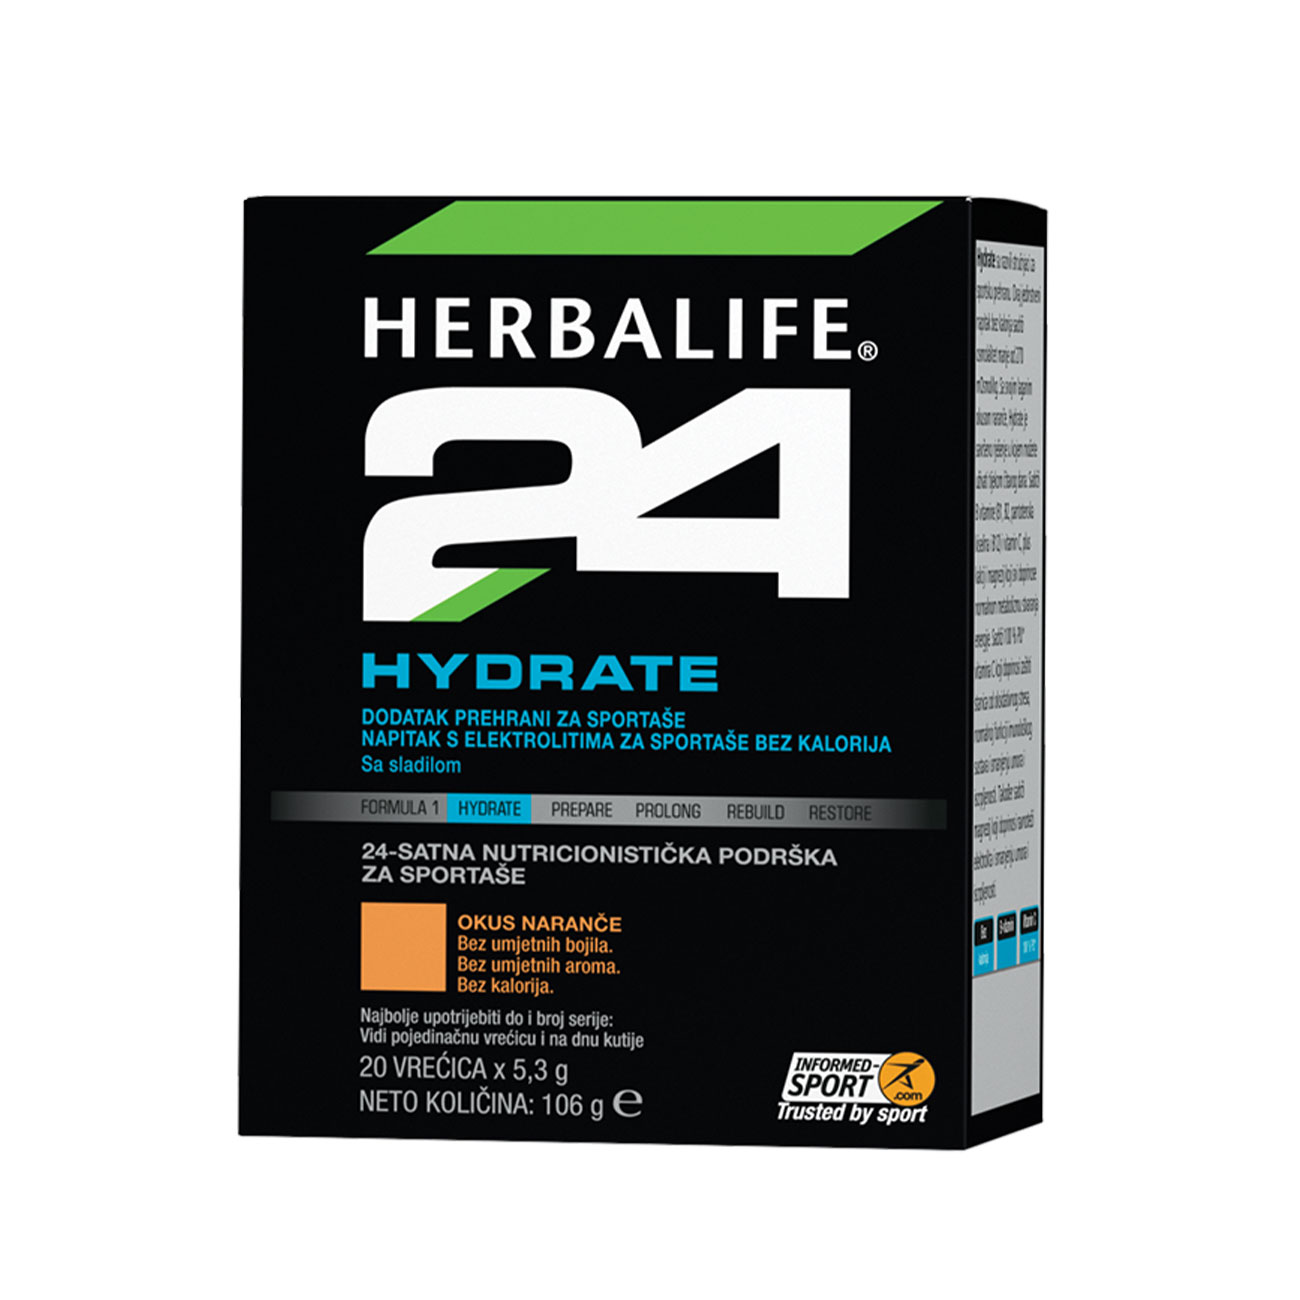 Herbalife24® Hydrate Dodatak prehrani - Napitak s elektrolitima okus naranče slika proizvoda